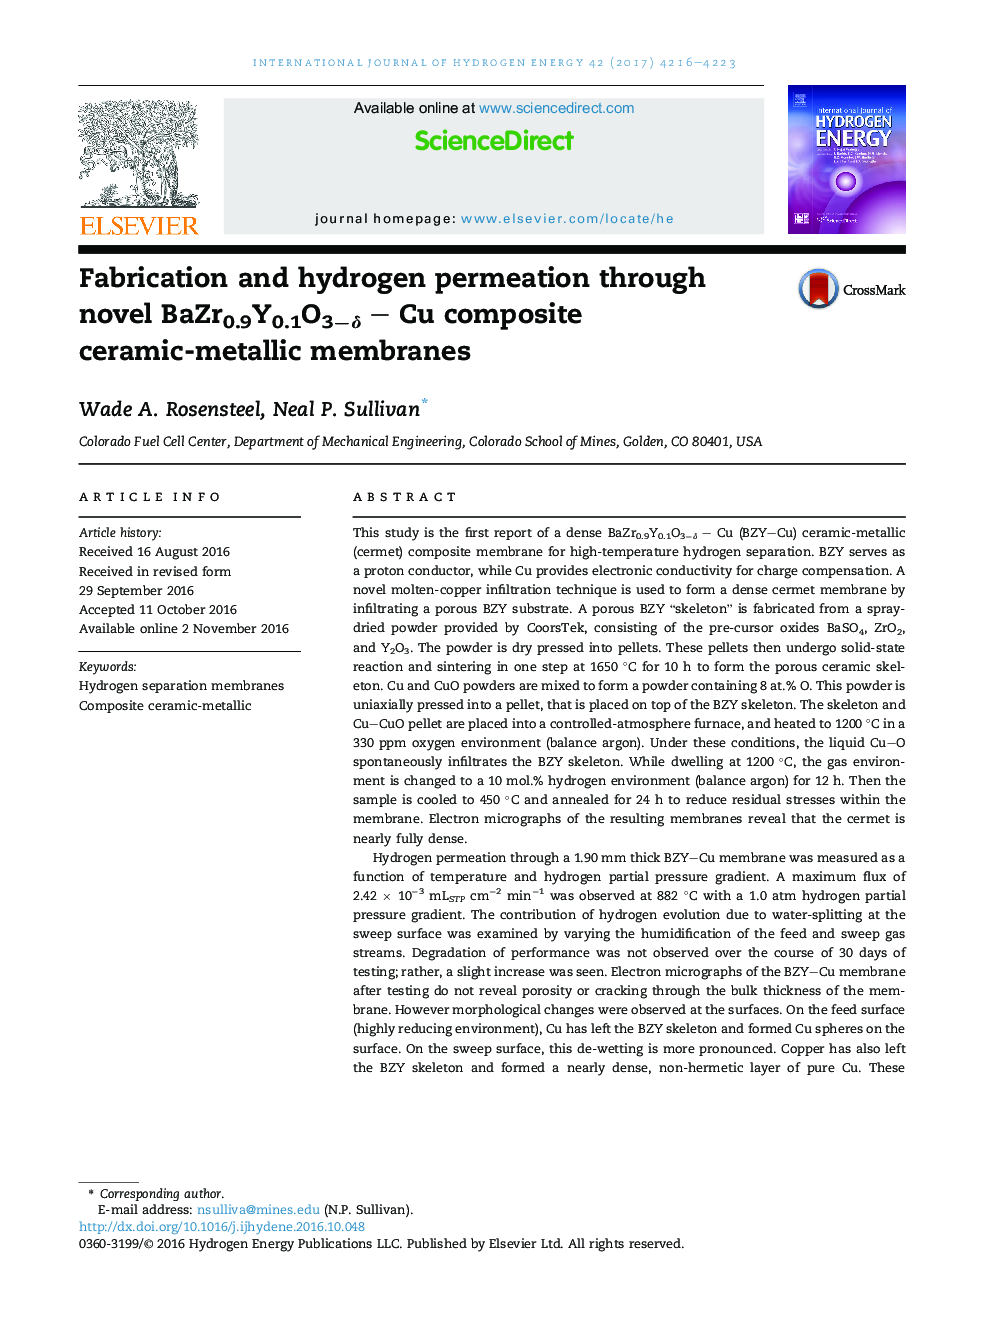 Fabrication and hydrogen permeation through novel BaZr0.9Y0.1O3âÎ´ - Cu composite ceramic-metallic membranes